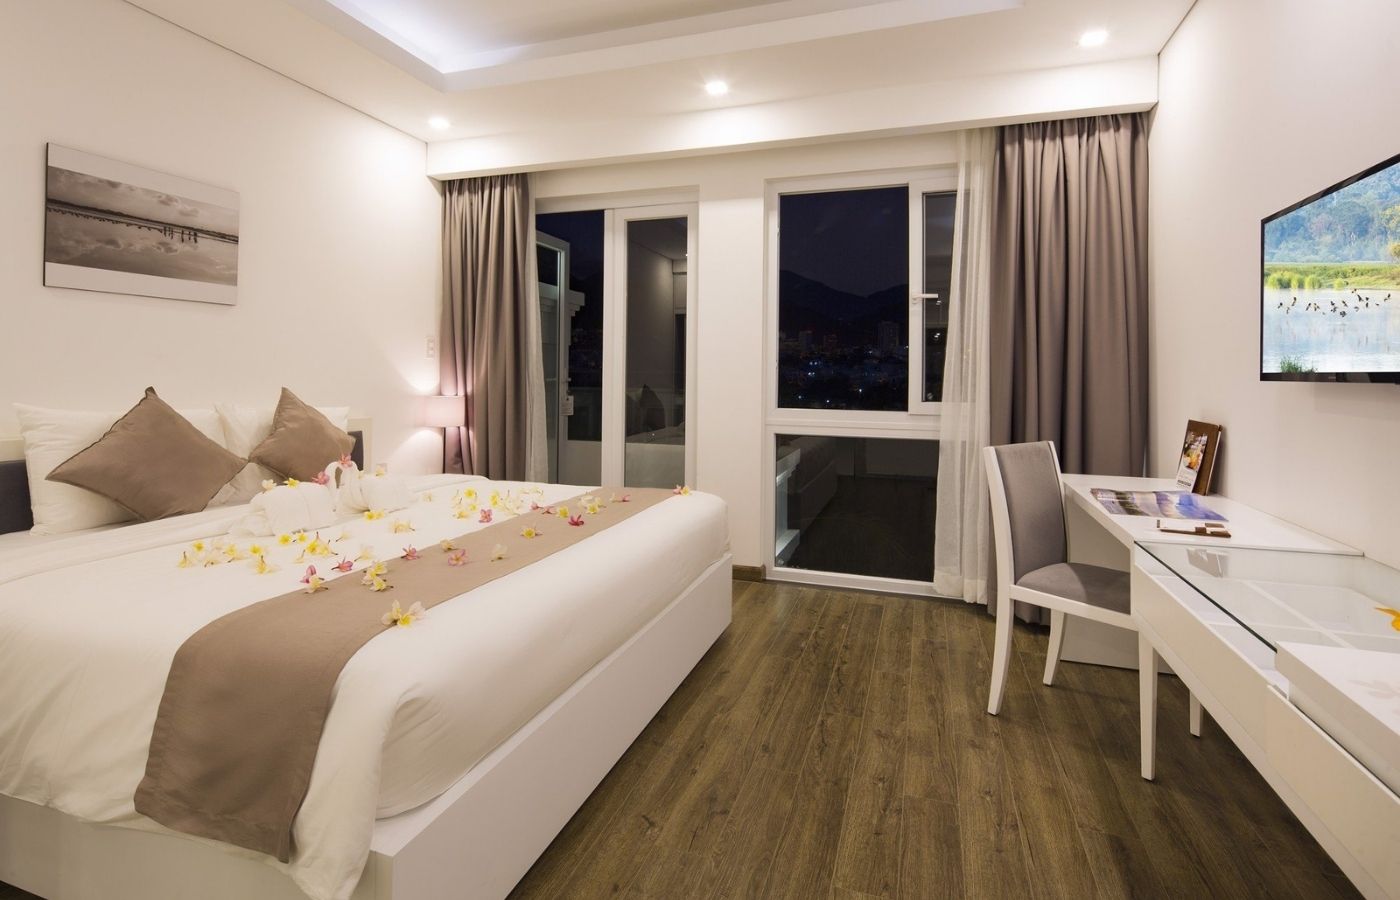 Champa Island Nha Trang - Resort Hotel & Spa- ốc đảo xanh giữa lòng thành phố biển 6